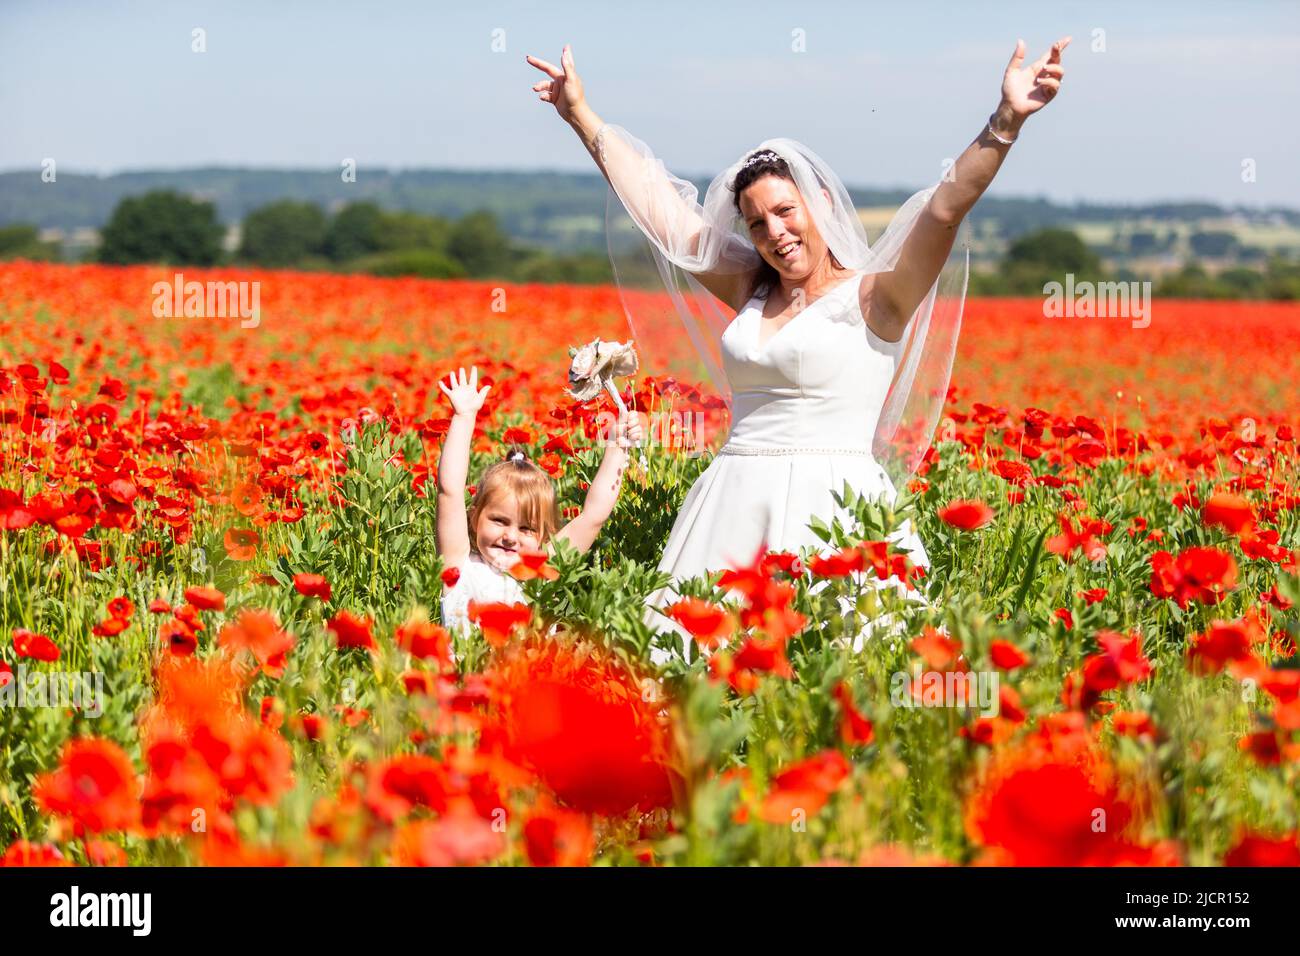 Bride in white wedding dress in a poppy field, UK 2022 Stock Photo